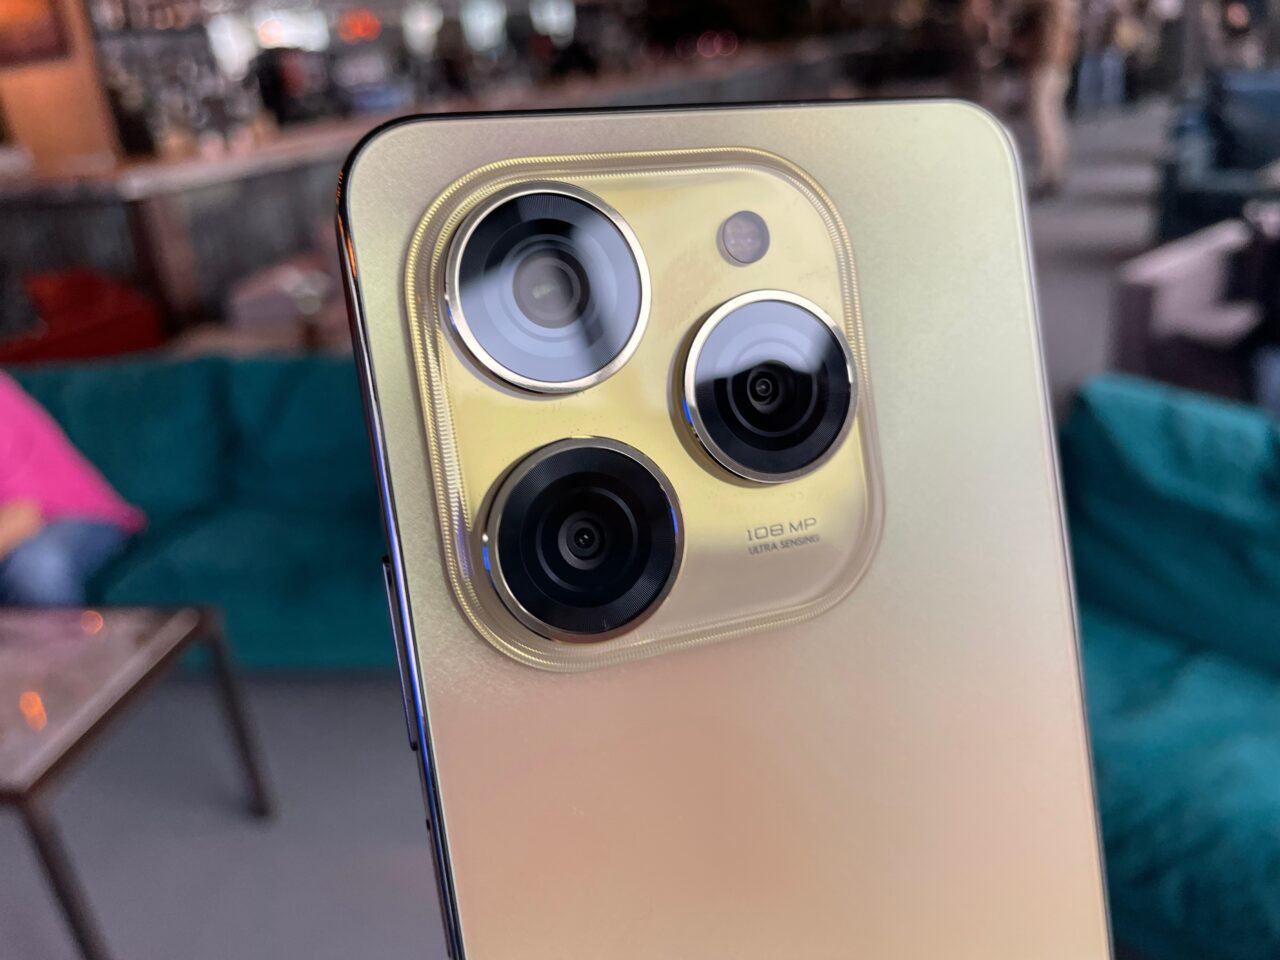 Tylny panel smartfona tecno spark 20 pro w złotym kolorze z trzema obiektywami kamery i etykietą "108 MP ULTRA SENSING" na tle rozmytego wnętrza.